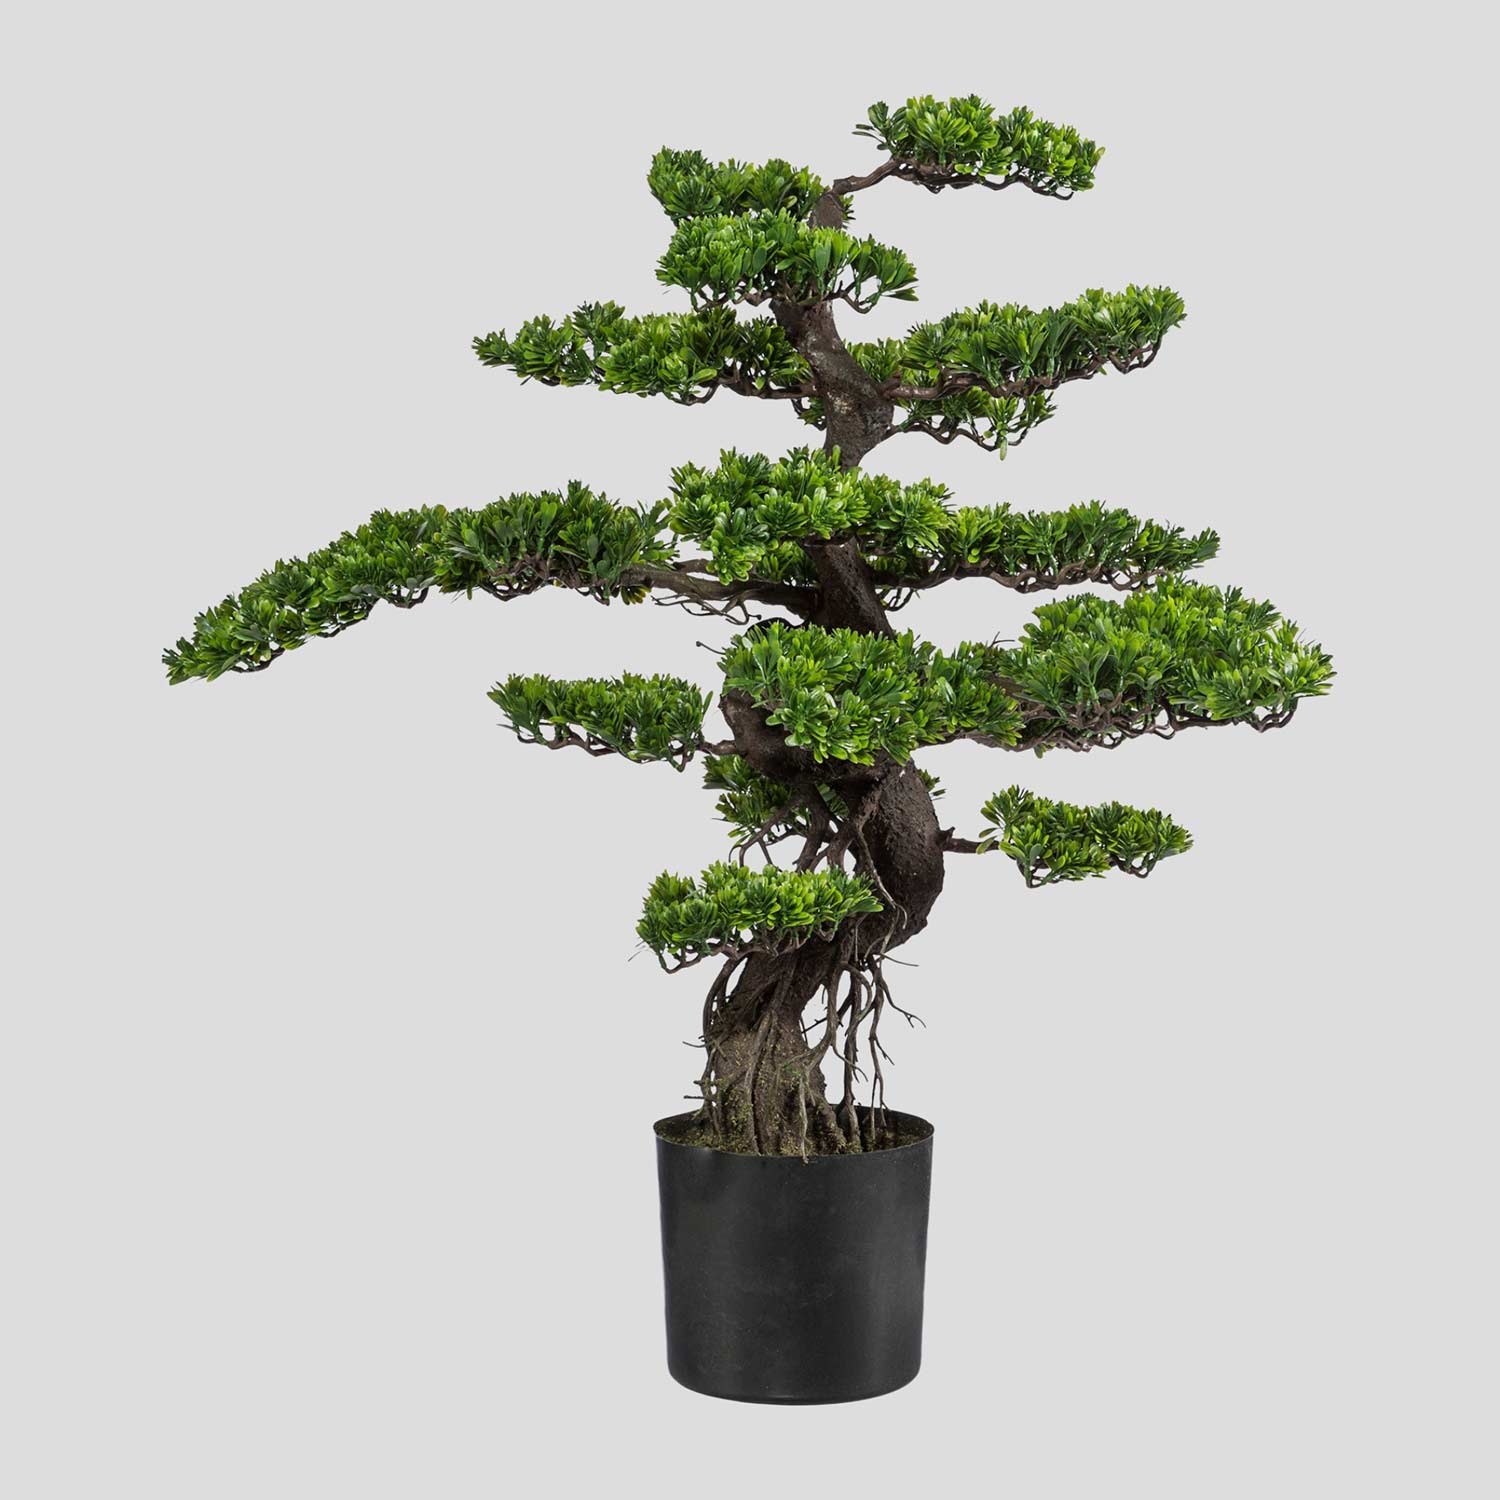 Nagyméretű, 90 cm magas, mesterséges bonsai fa, fekete színű műanyag cserépben.